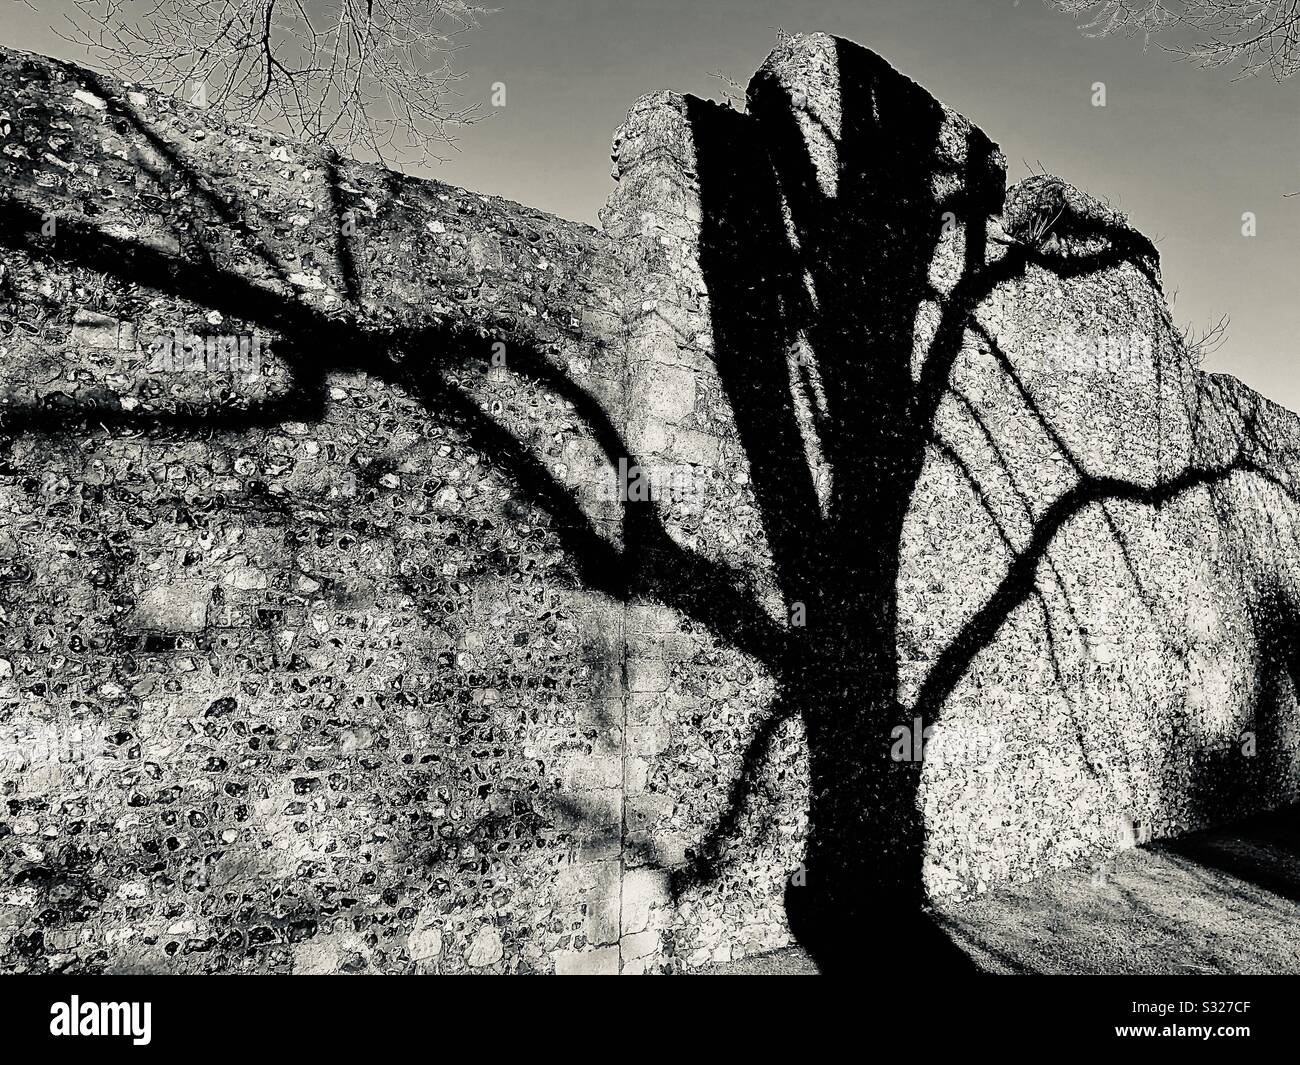 Imagen en tonos plateados de la sombra del viejo árbol a través de una muralla medieval hecha con piedra de piedra. Foto de stock